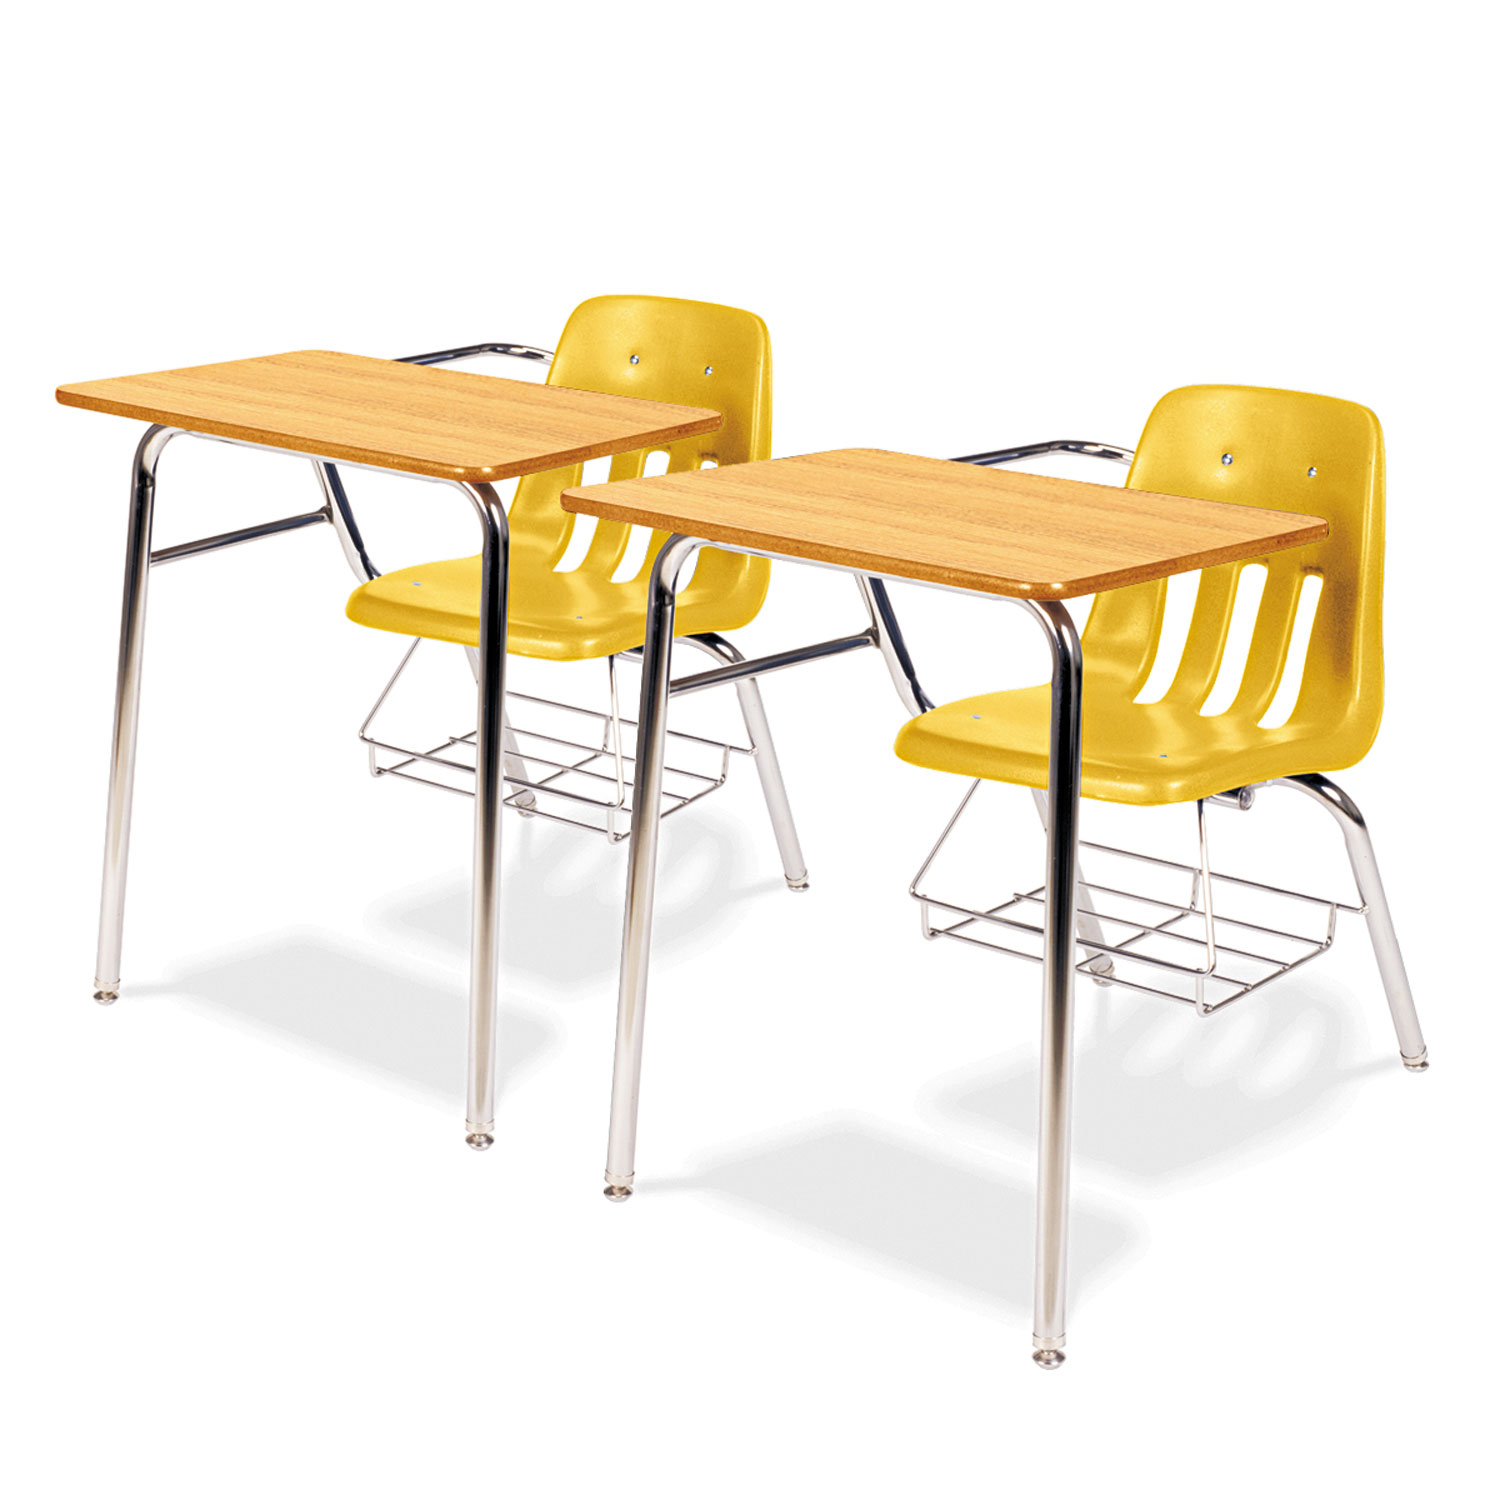 9400 Series Chair Desk, 21w x 33-1/2d x 30h, Medium Oak/Squash, 2/Carton